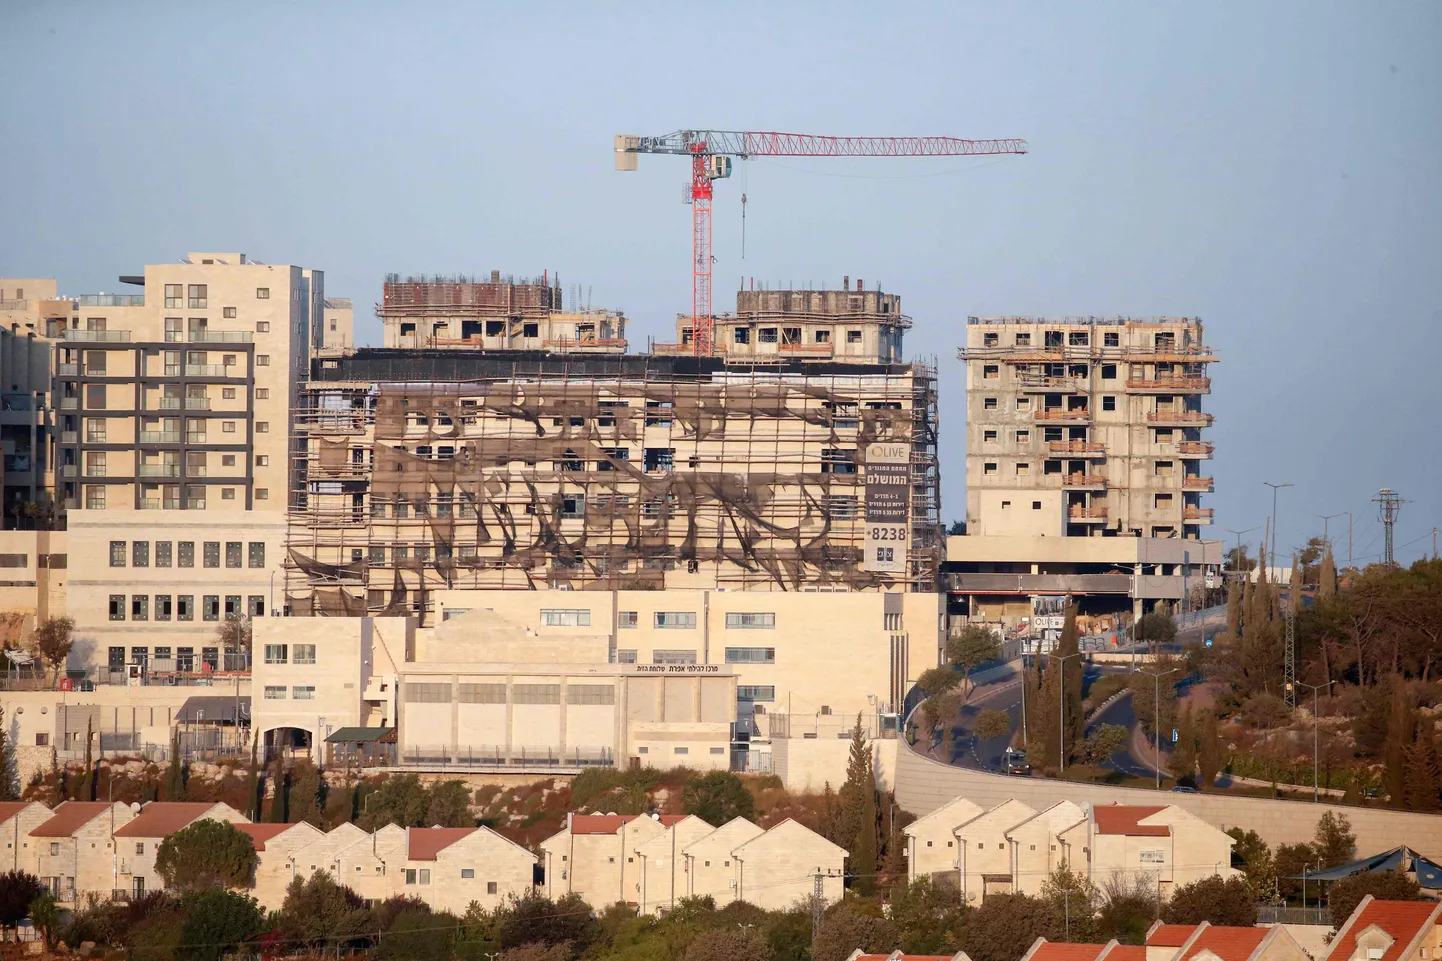 Ehitusjärgus elumaja Iisraeli Efrati asunduses okupeeritud Läänekaldal 14. oktoober 2020.